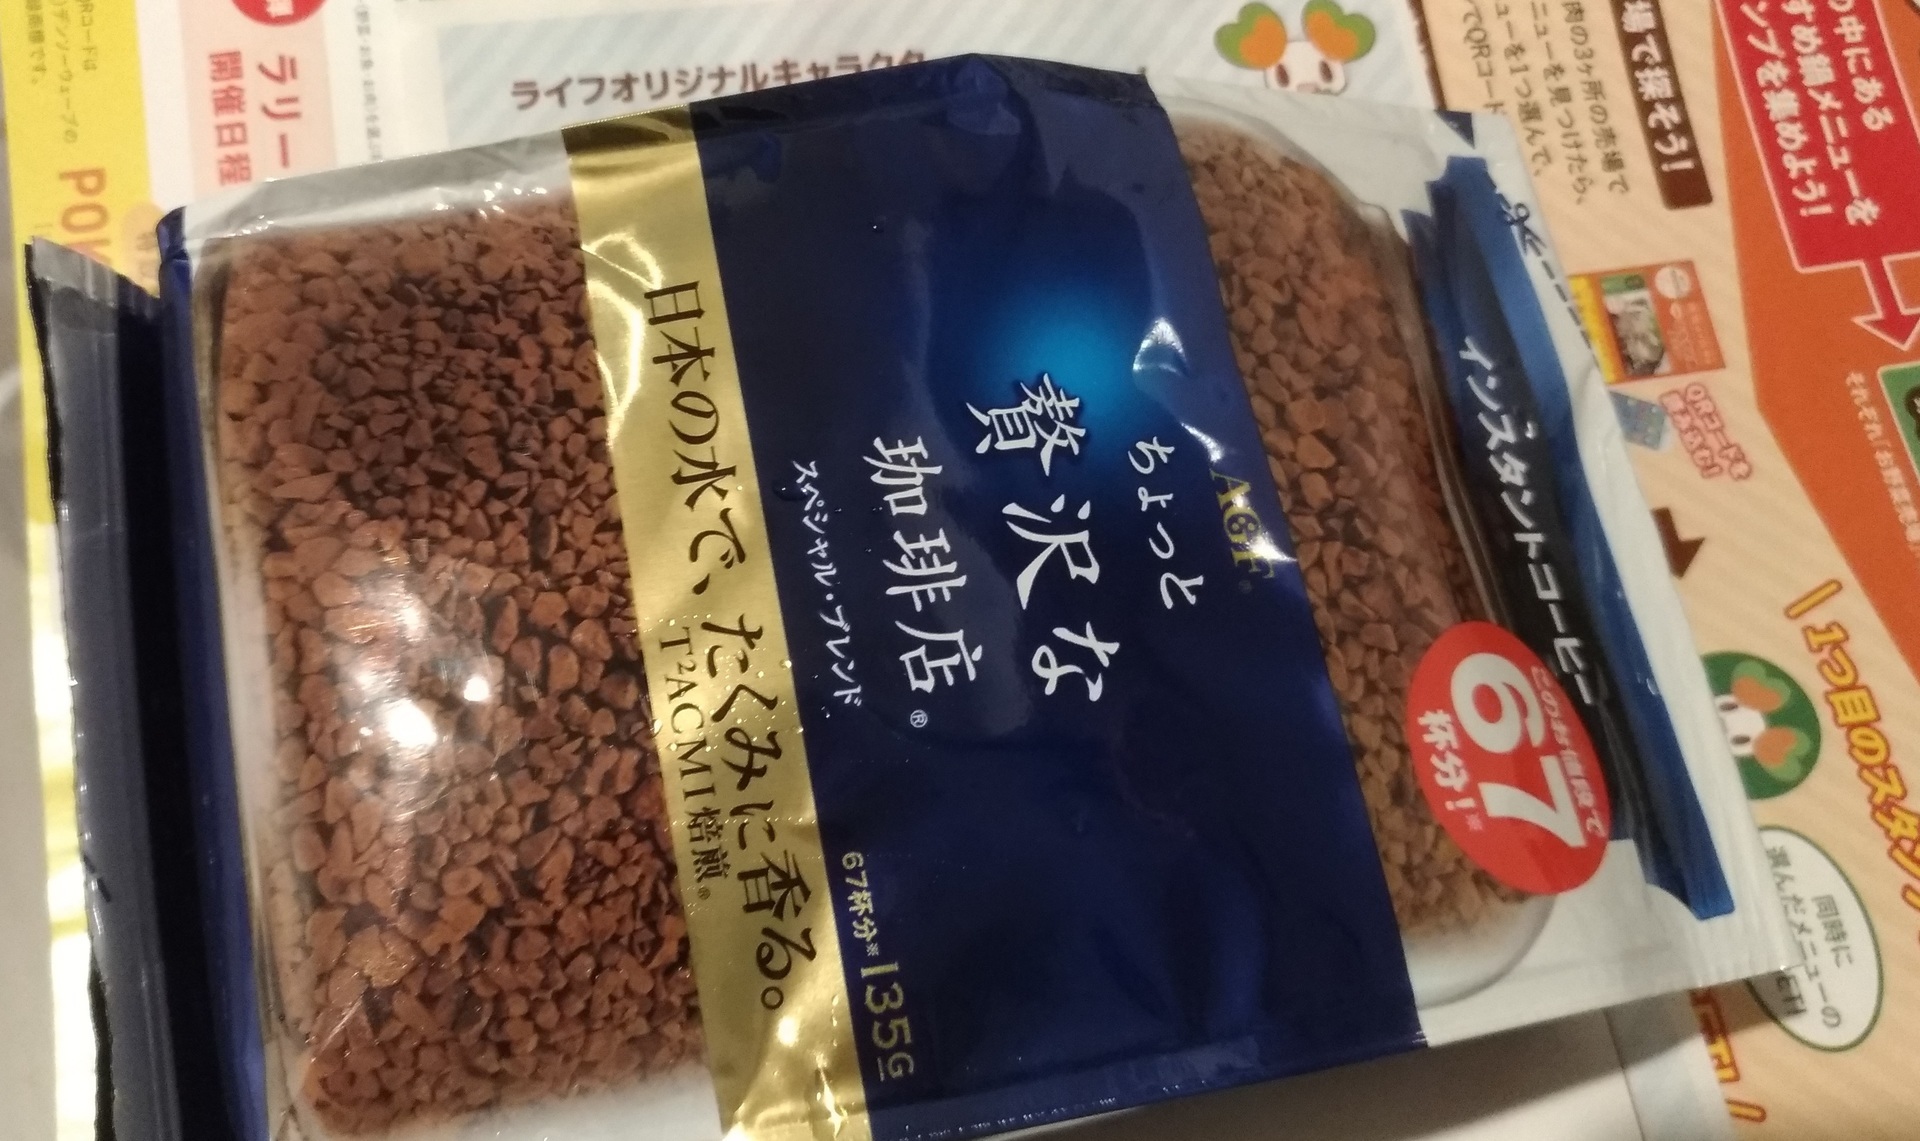 インスタントコーヒー 安いスーパーライフ昨日は特別価格に スーパーライフ 大阪おすすめお惣菜野菜をブログでポイントも